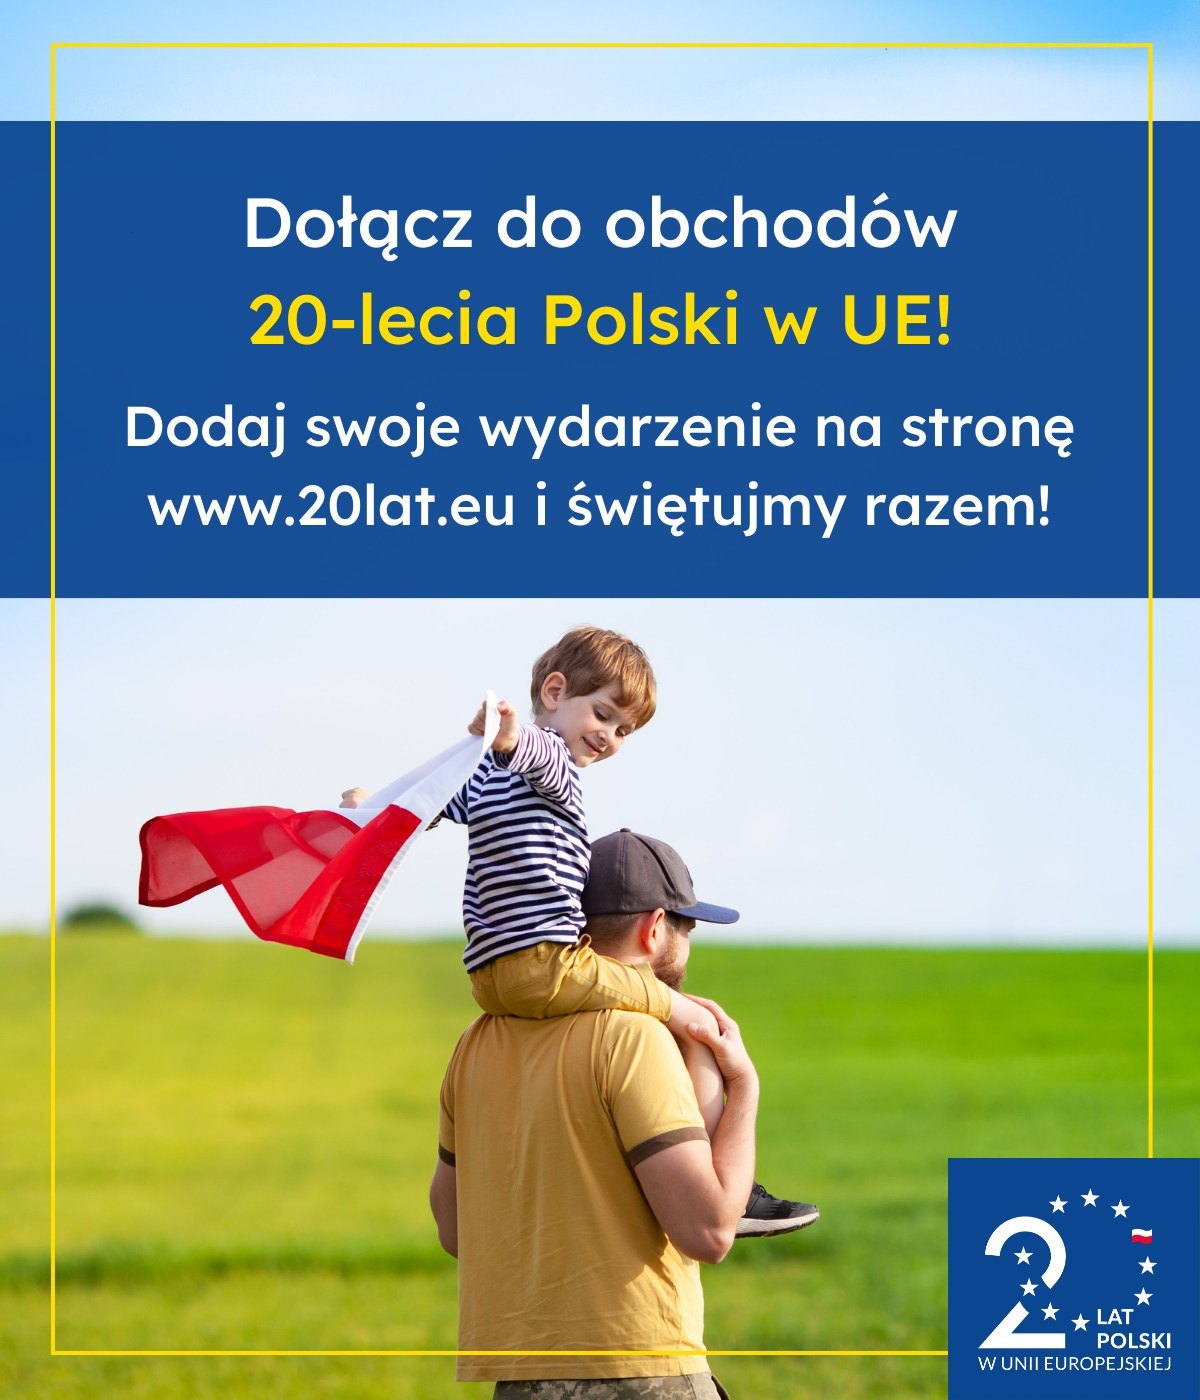 Obrazek dla: Dołącz do obchodów 20-lecia Polski w Unii Europejskiej!